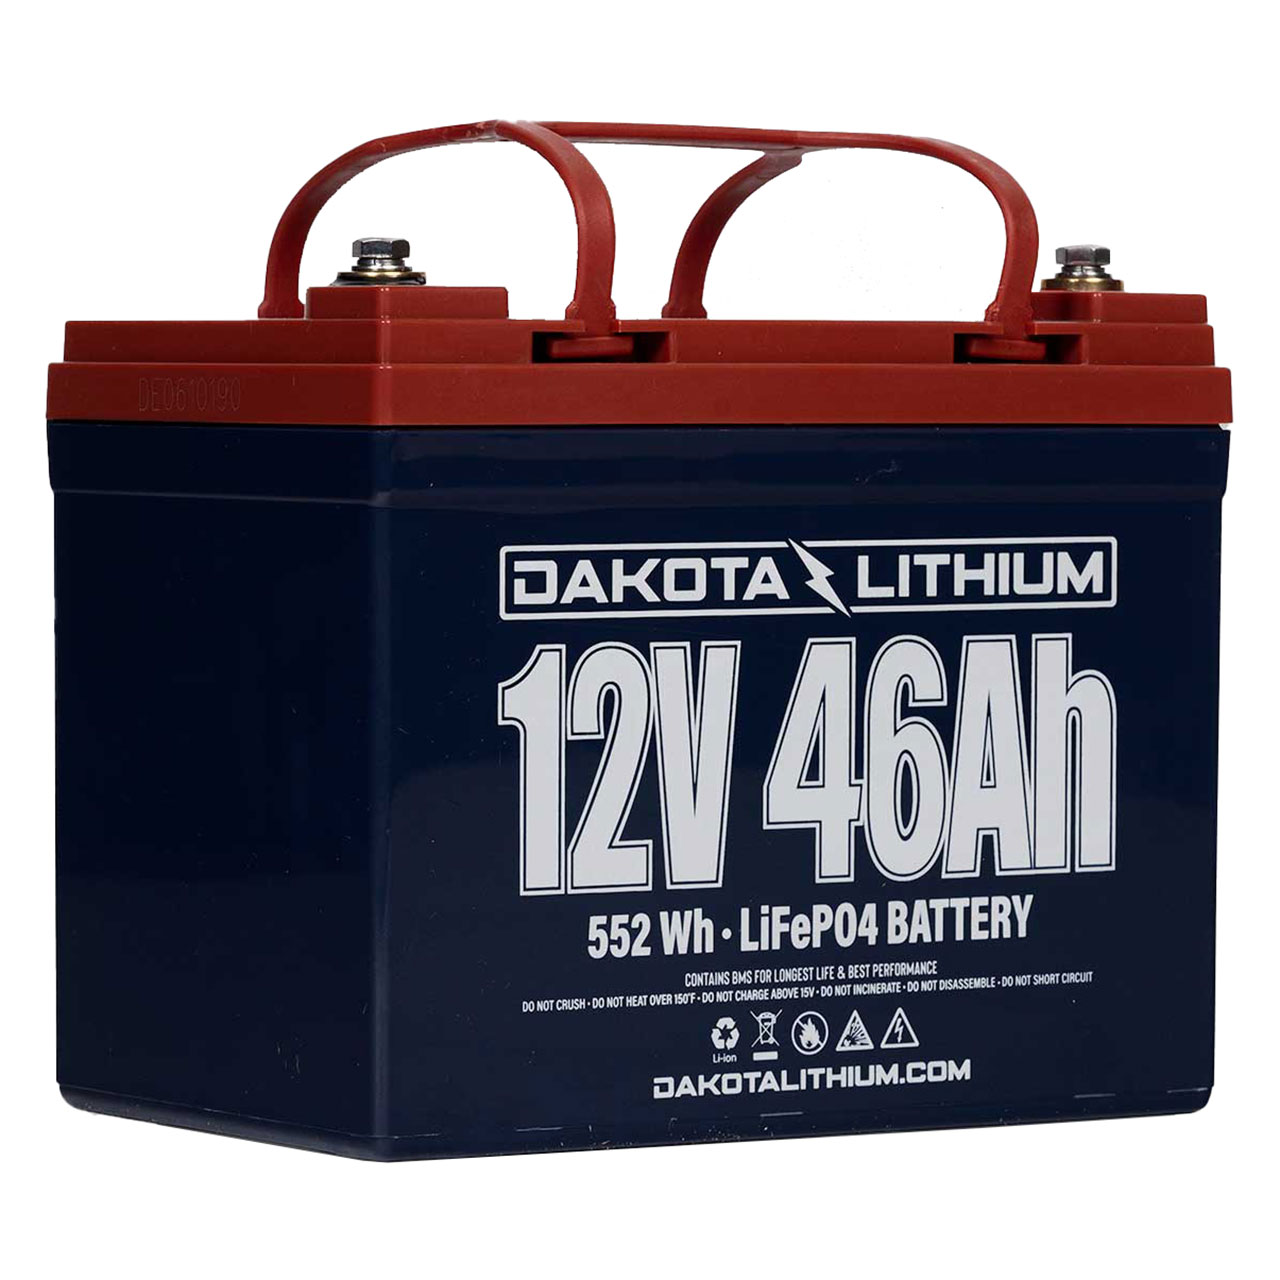 Dakota Lithium 12V 46Ah Battery - Group 21